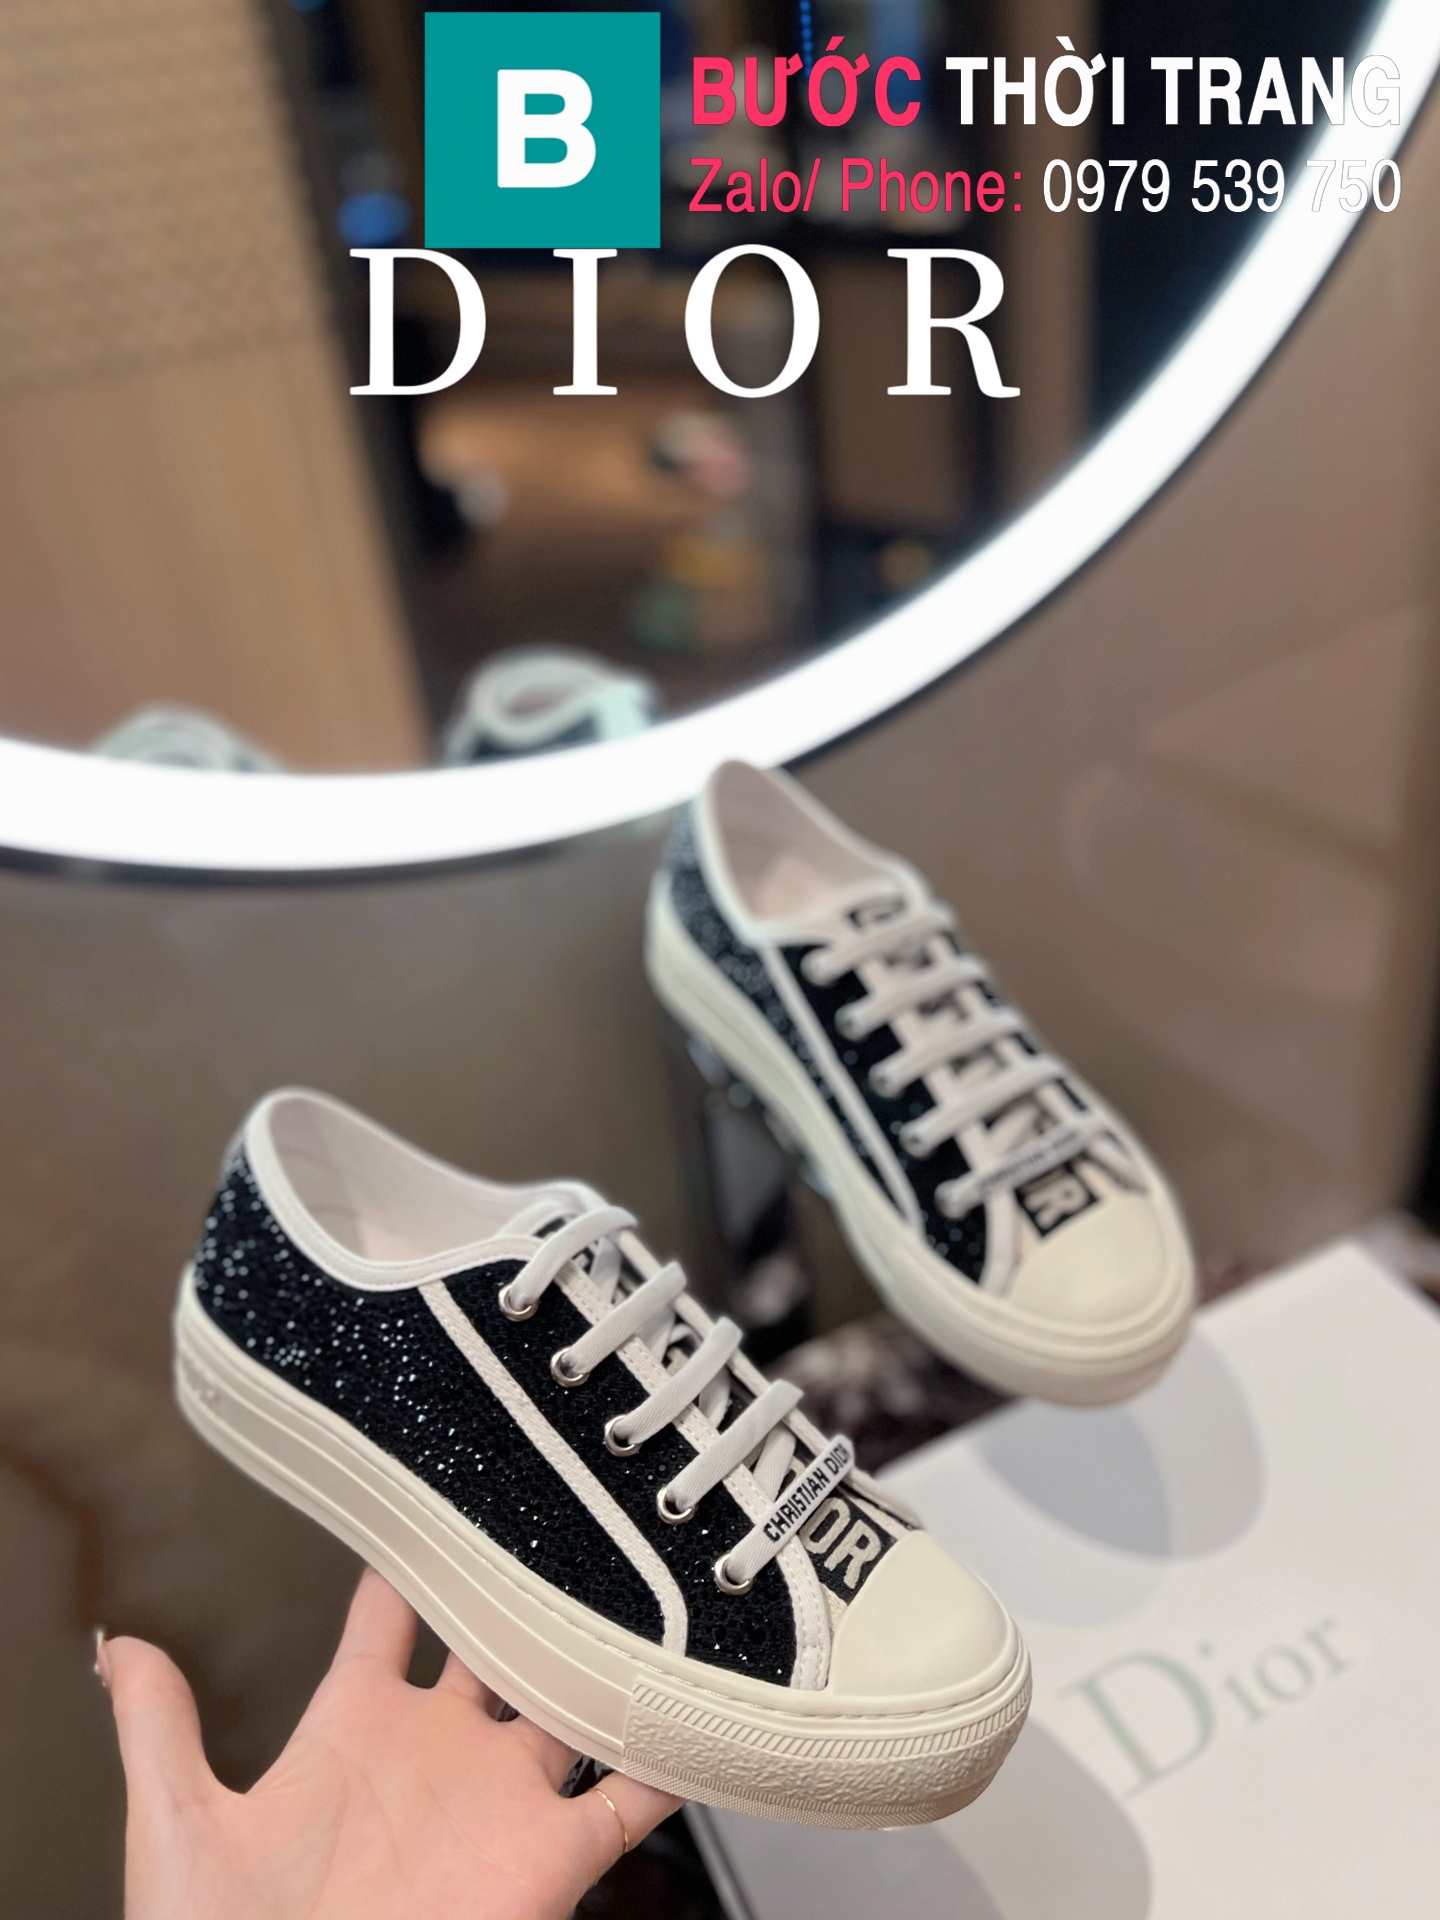 Dior cao cổ Rep 11  Thời thượng và năng động tham vọng mới của nhà mốt  Pháp